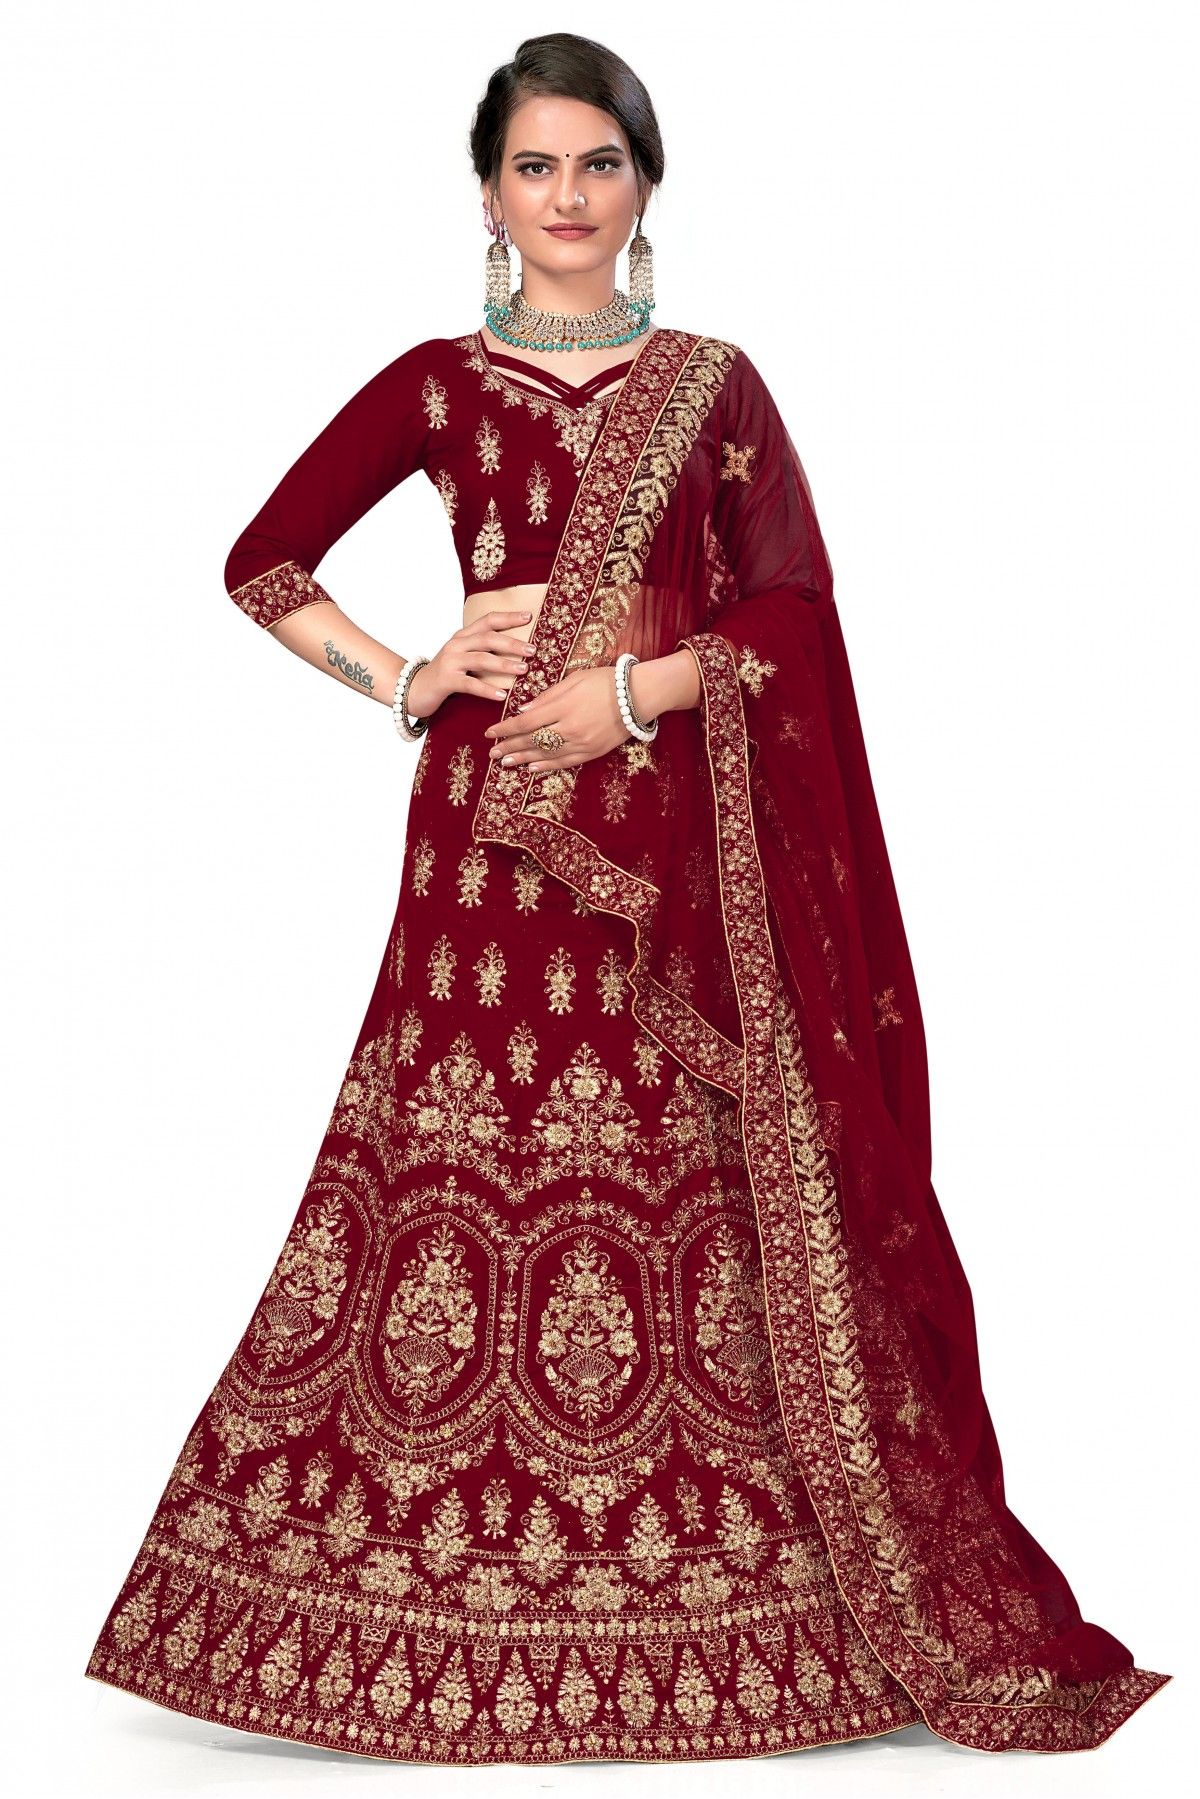 Velvet Embroidery Lehenga Choli In Maroon Colour - LD3233960